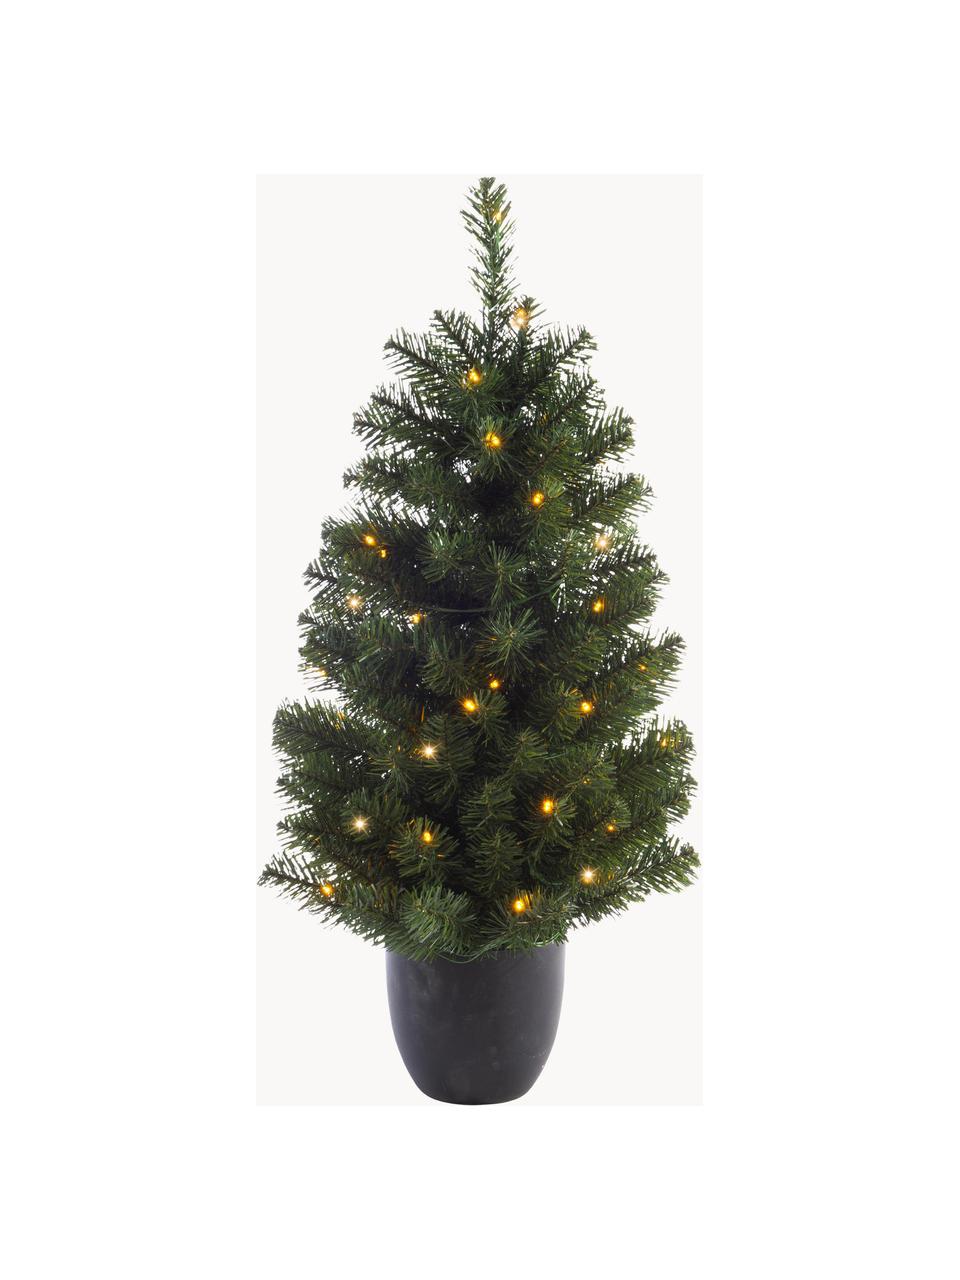 Künstlicher LED-Weihnachtsbaum Imperial, H 90 cm, Übertopf: Kunststoff, Dunkelgrün, Dunkelgrau, Ø 50 x H 90 cm